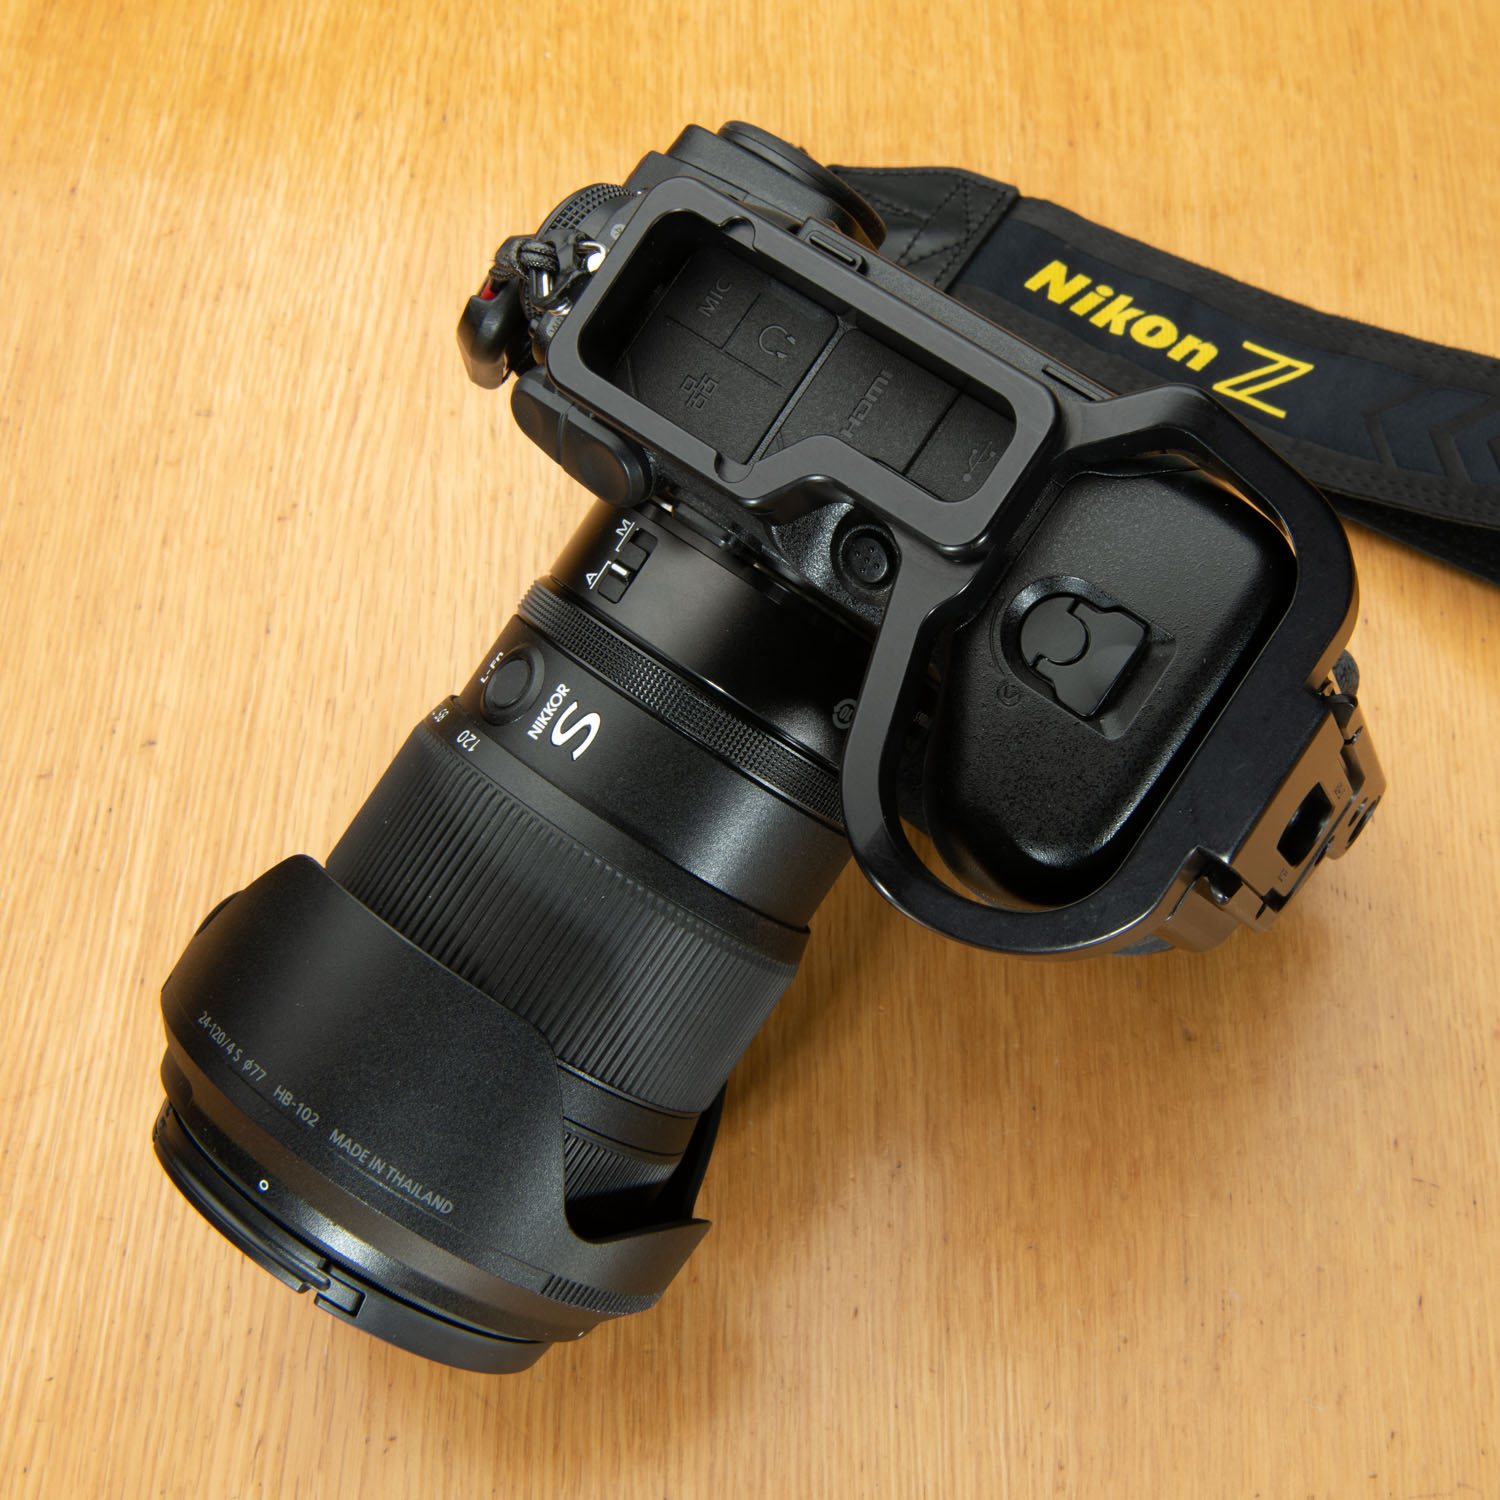 Nikon Z9用 RRS Lブラケット、フォーカスモードボタンを操作できる